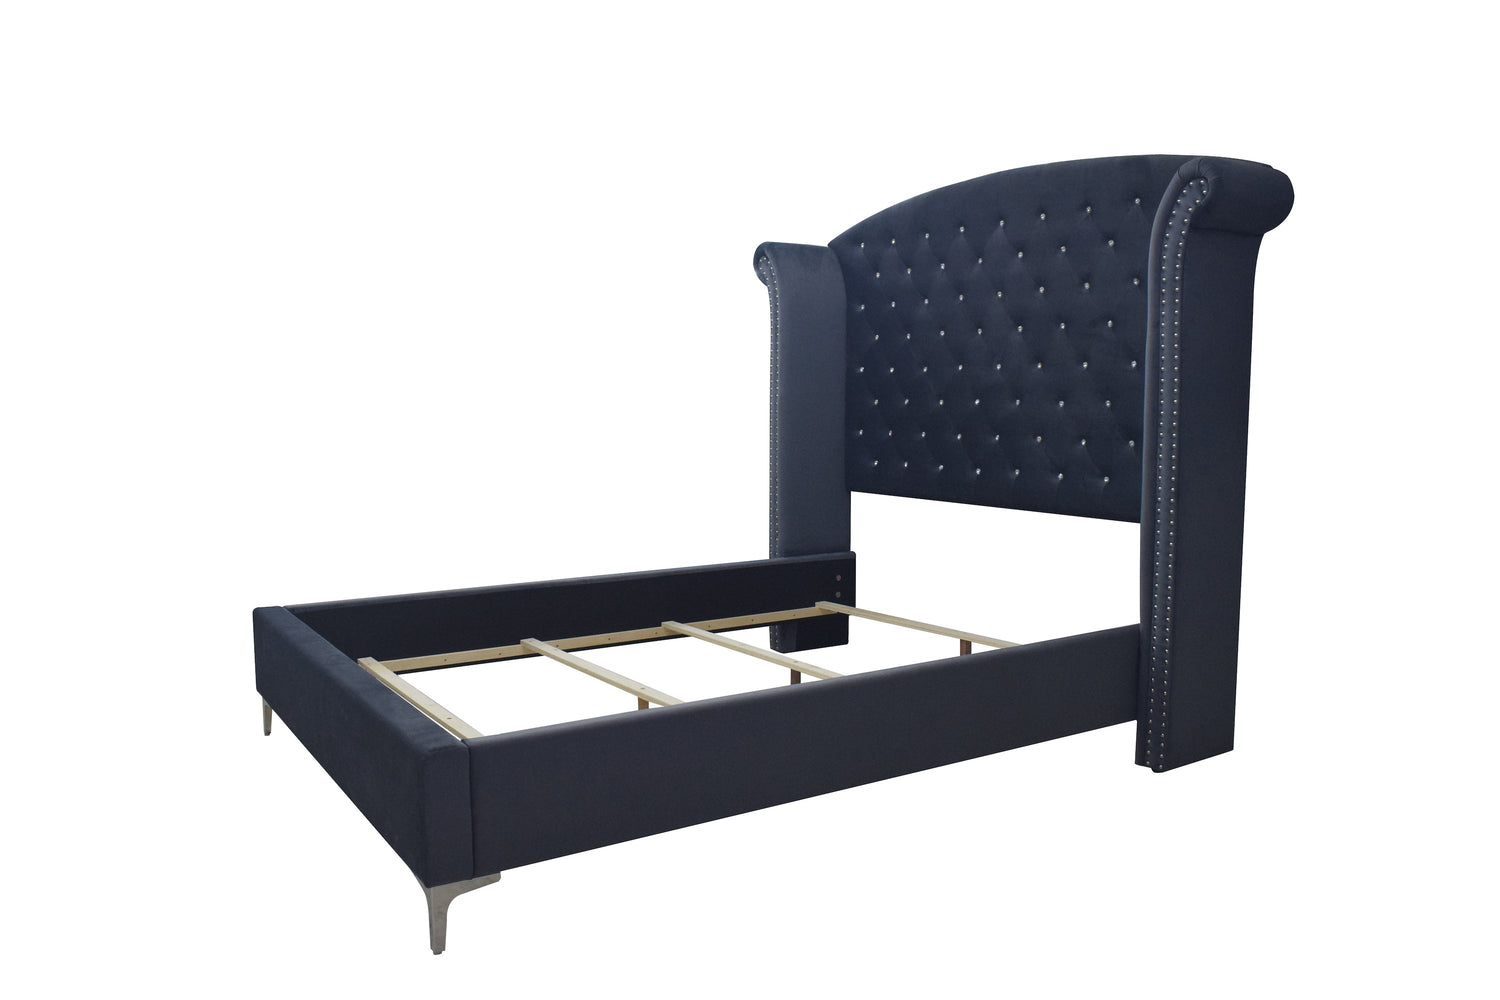 Lucinda Velvet Dark Gray King Upholstered Panel Bed - SET | B9260-K-HB | B9260-K-FBRL | B9260-KQ-WG - Bien Home Furniture &amp; Electronics